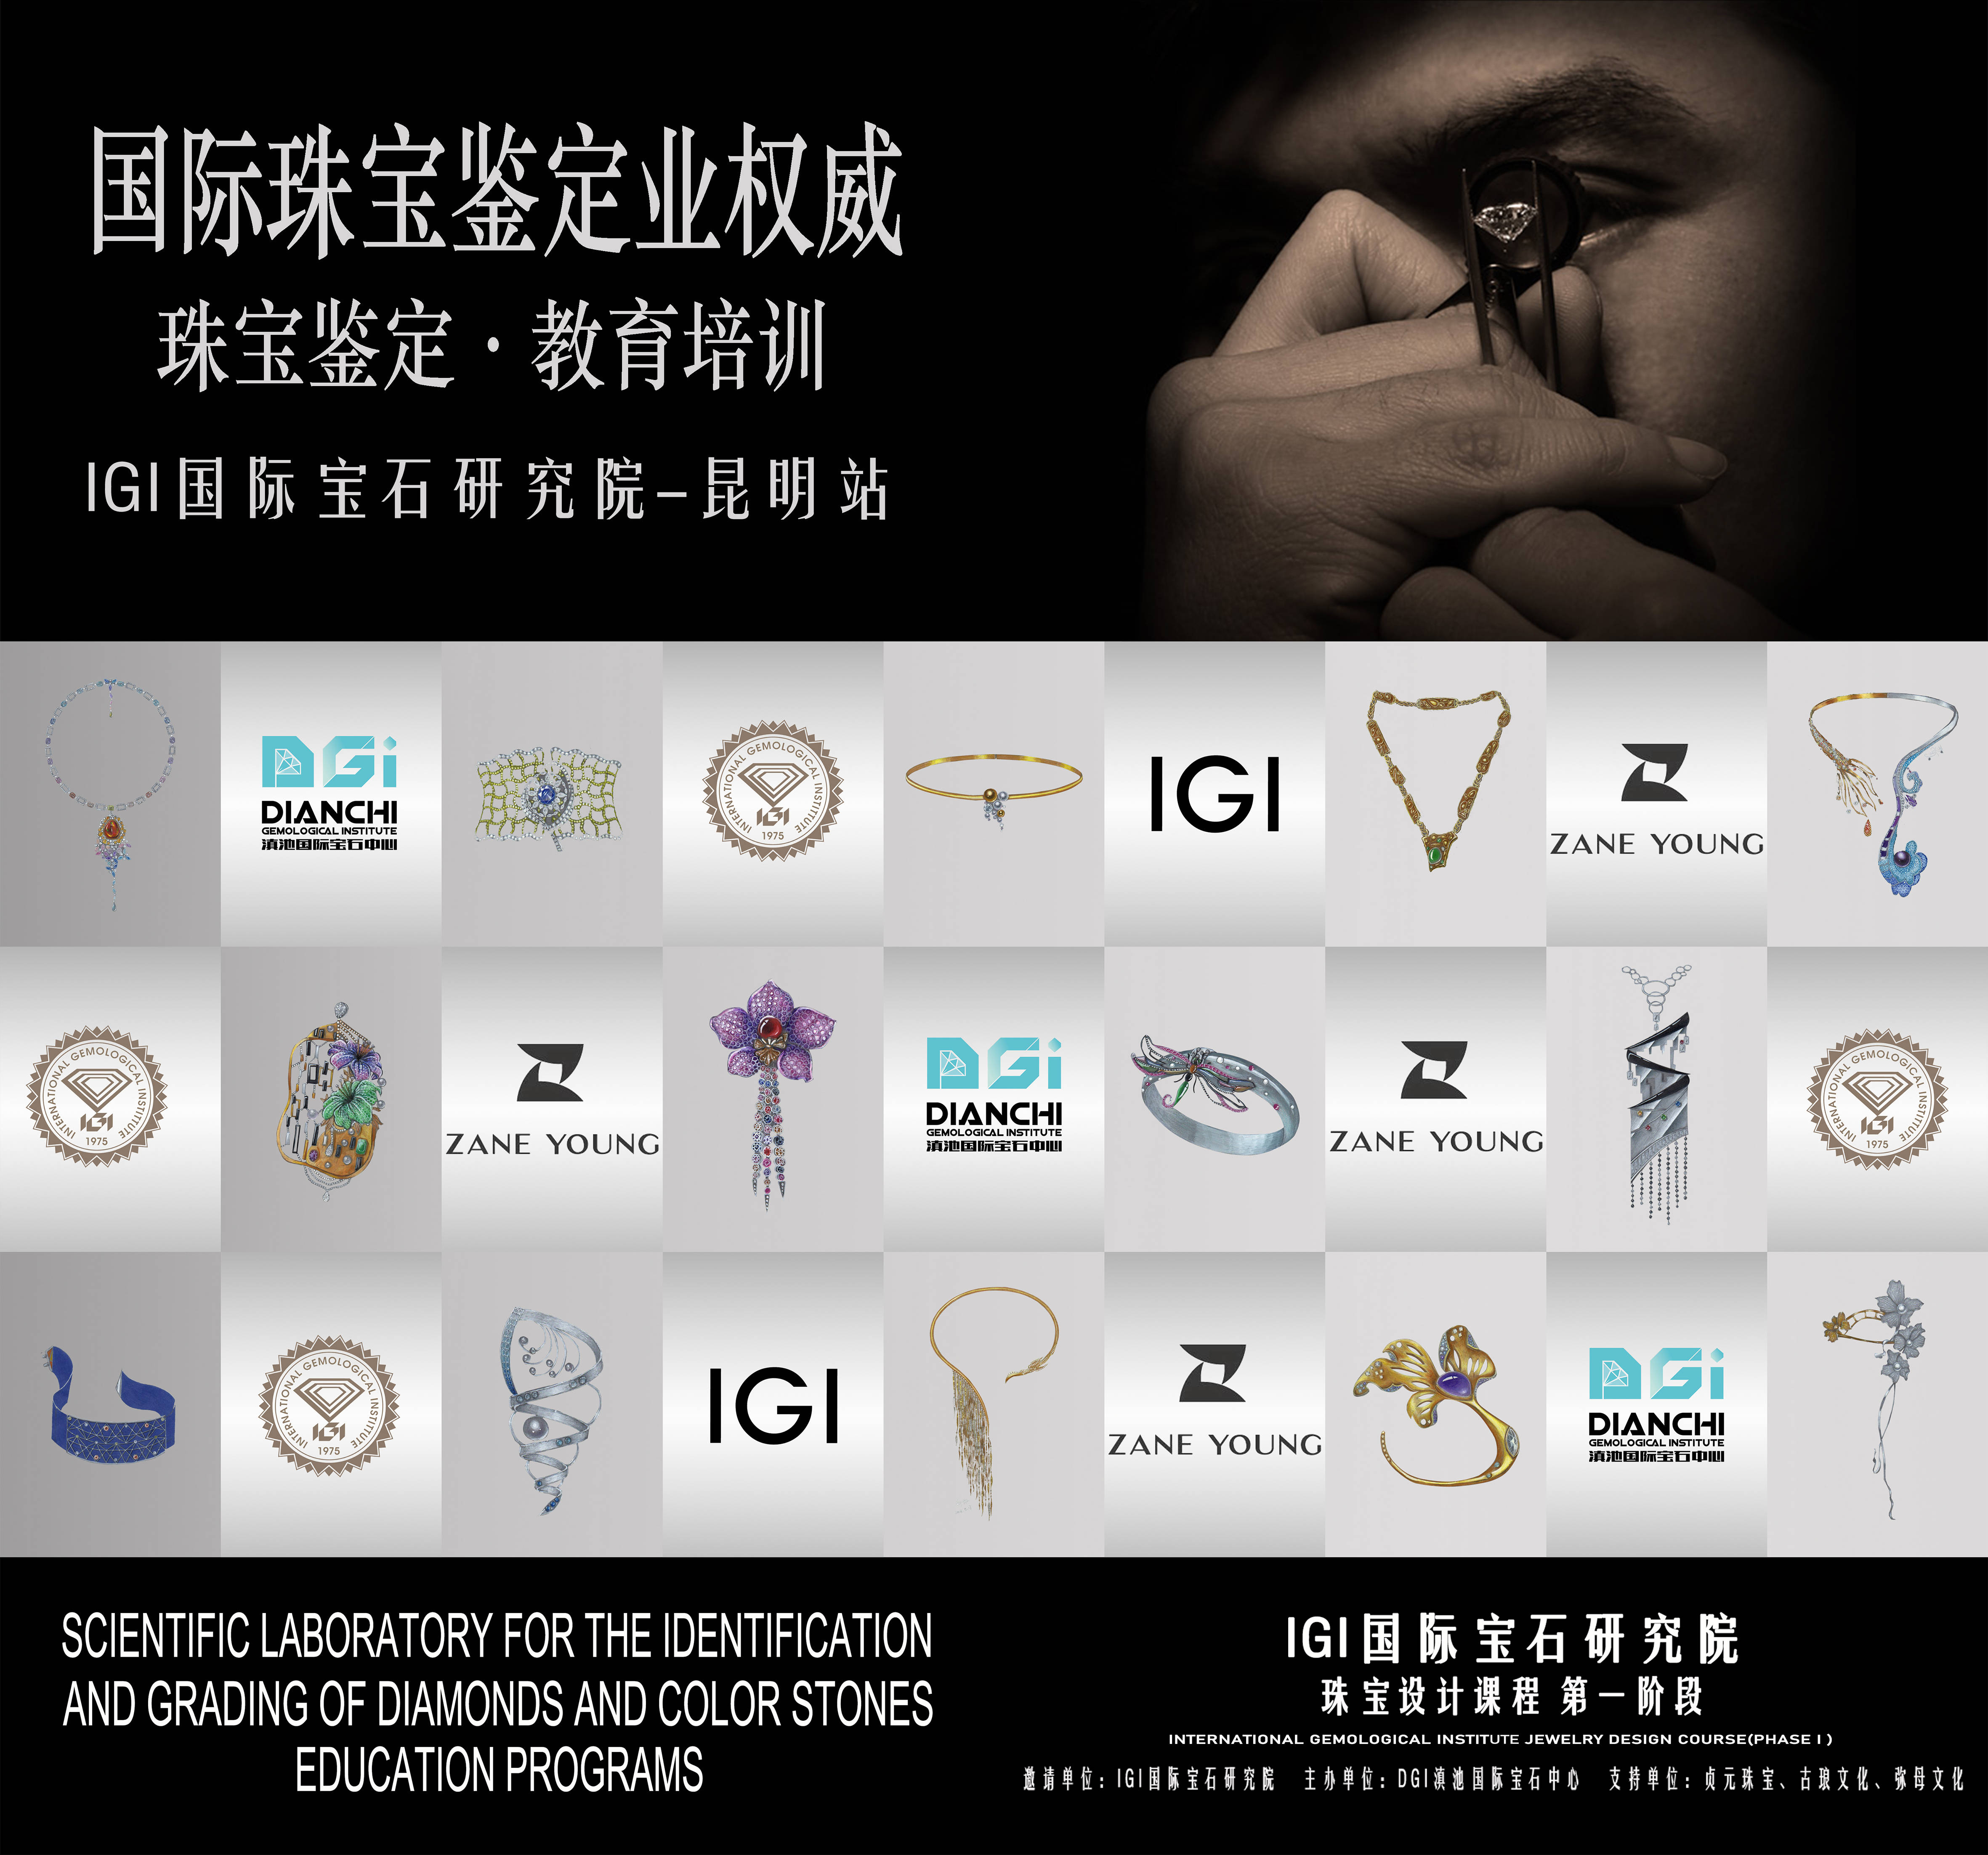 IGI国际宝石研究院 珠宝设计课程 第一阶段开课 中国 昆明 满员起航